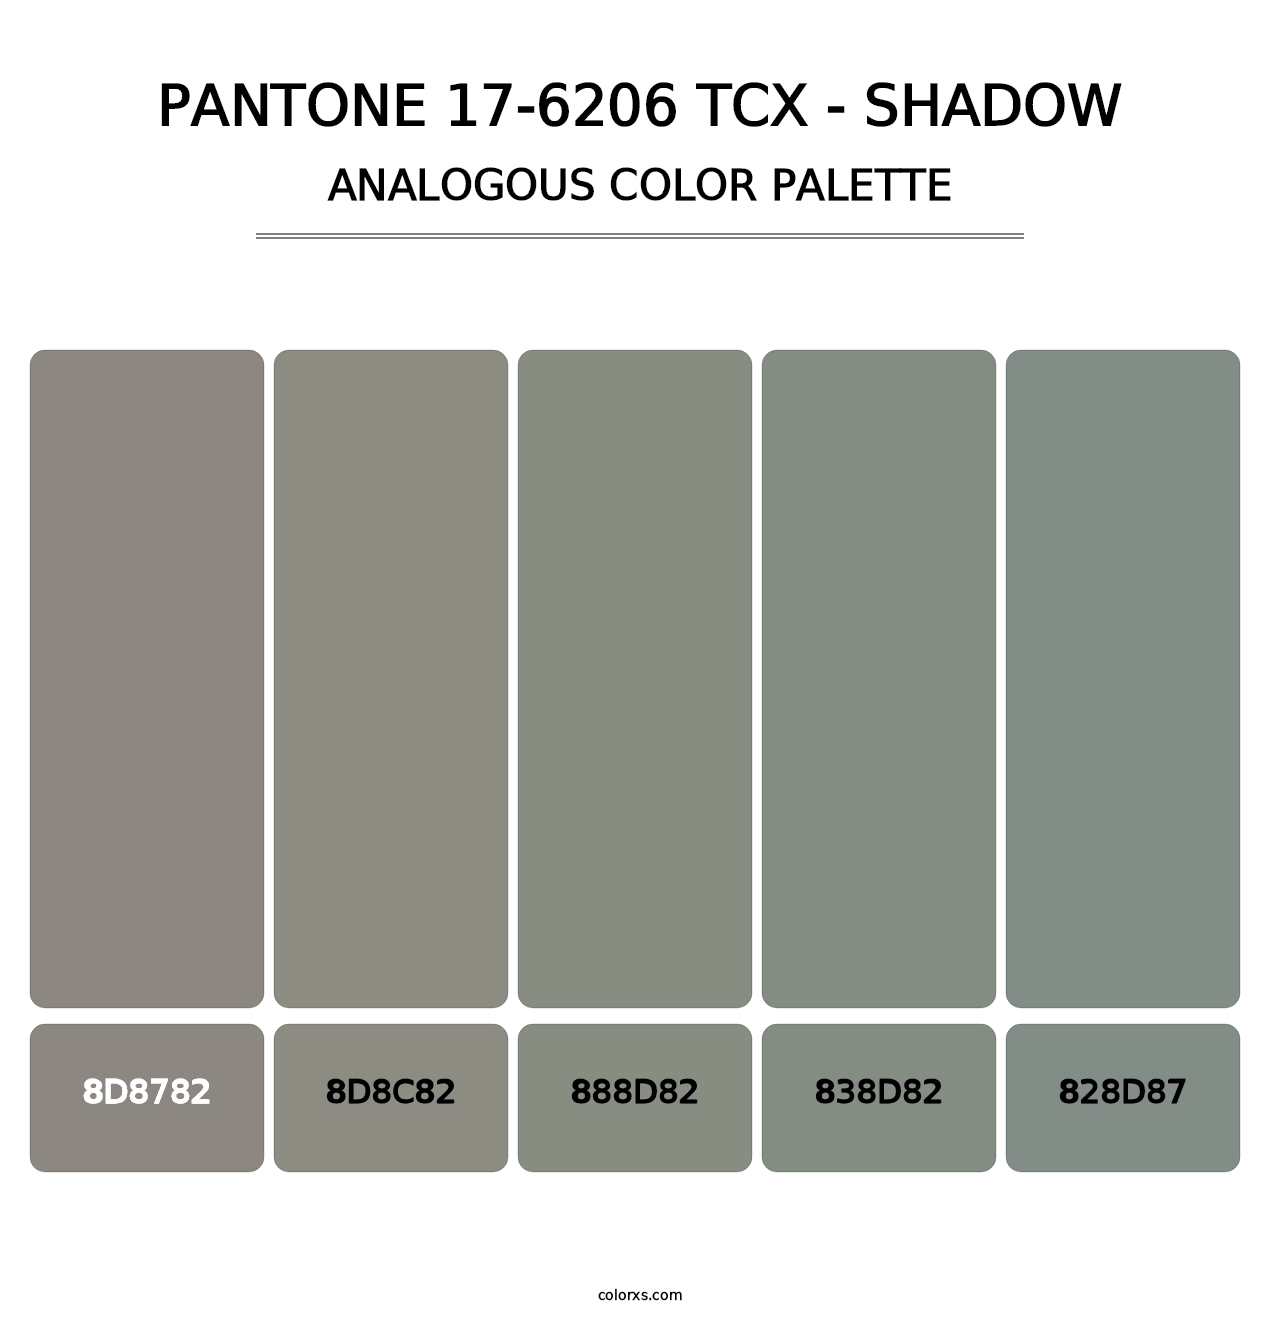 PANTONE 17-6206 TCX - Shadow - Analogous Color Palette